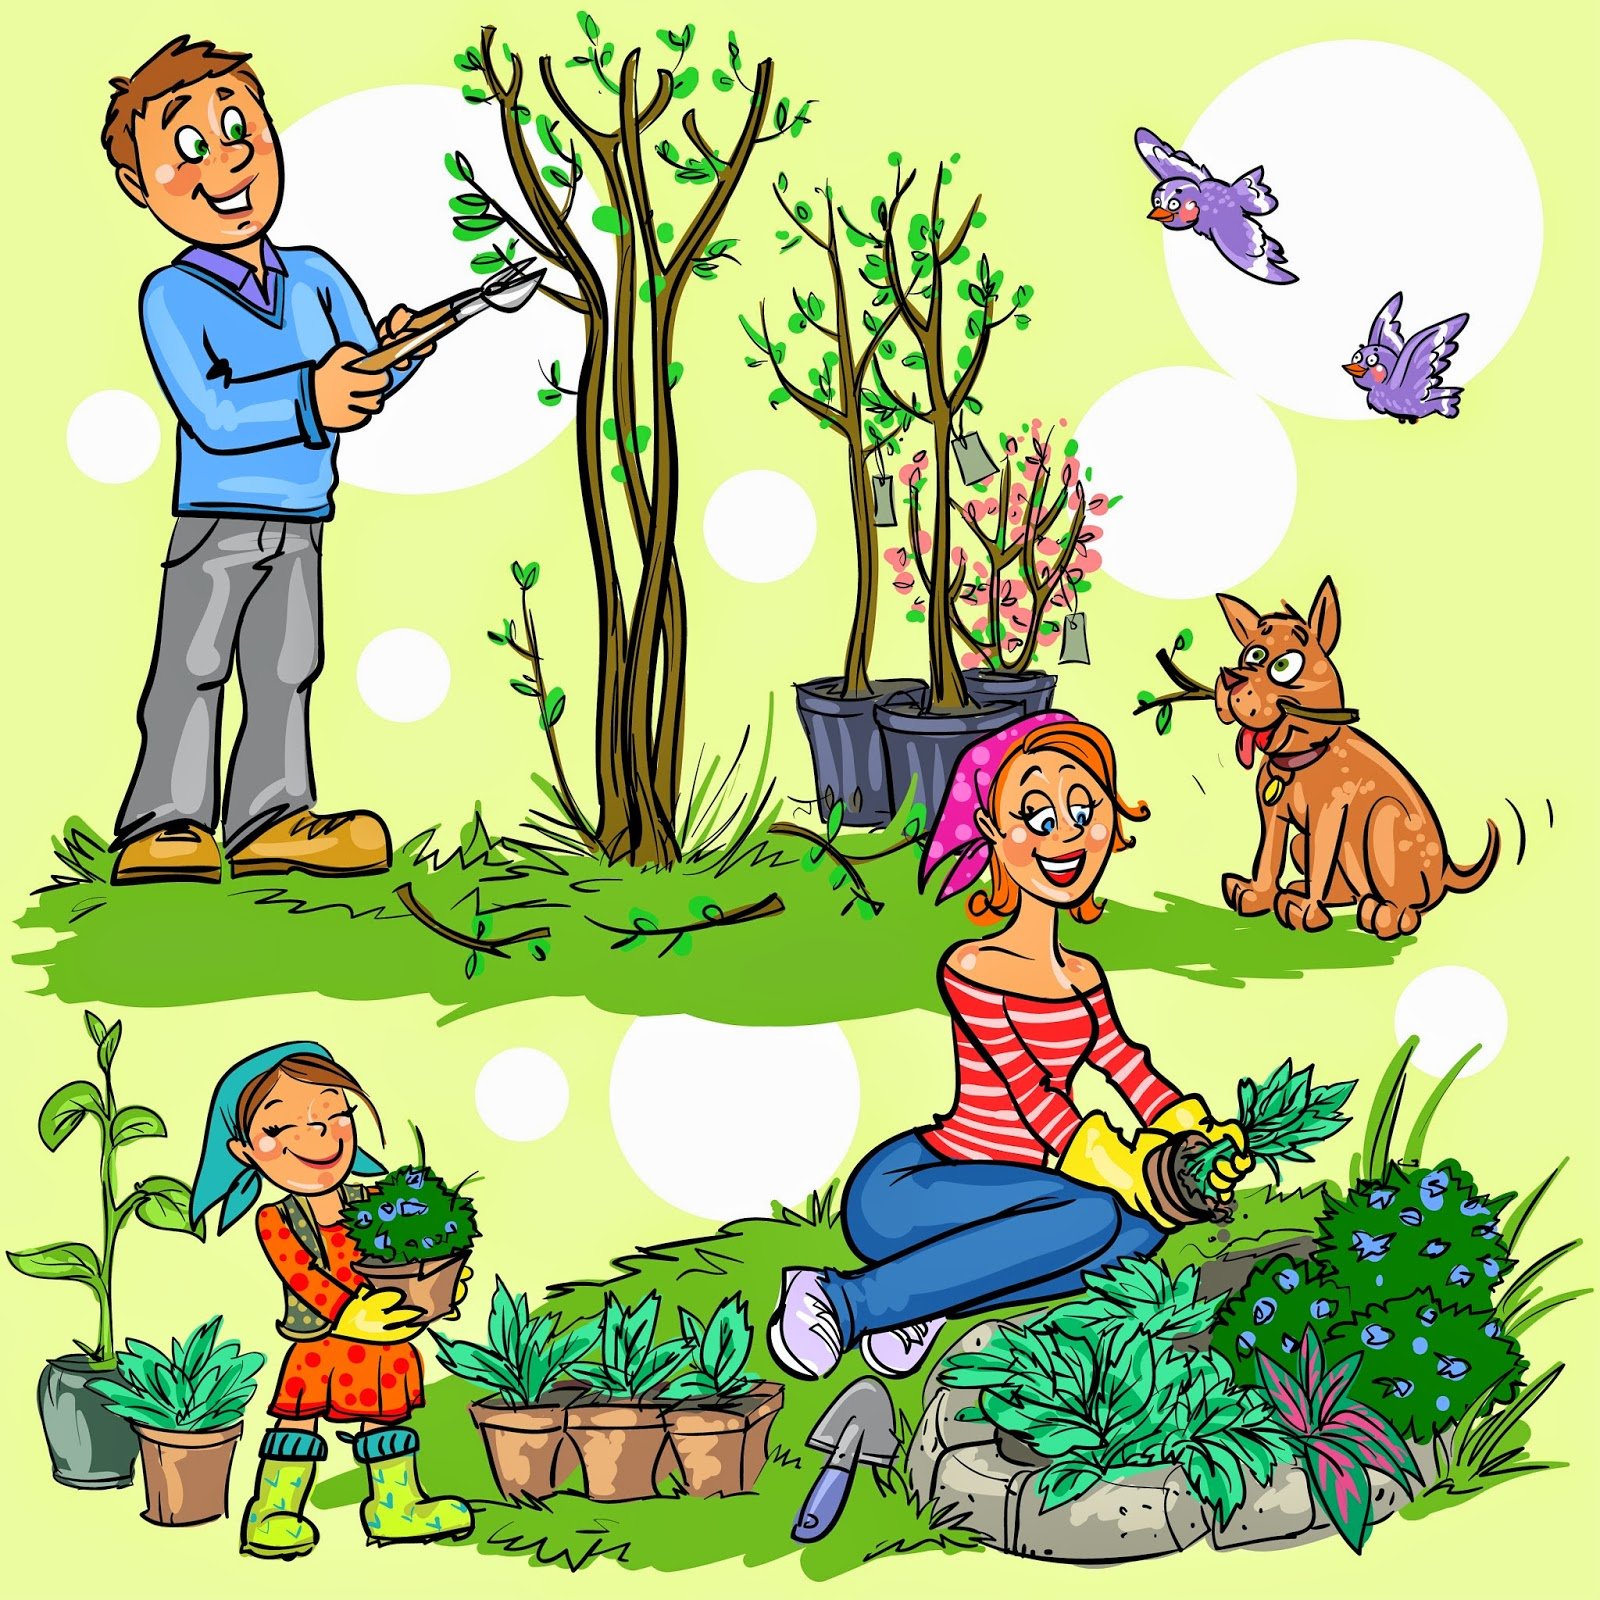 Садовий календар 2020 місячний, садових робіт в саду весни, літа, осені, таблиця, сприятливі дні